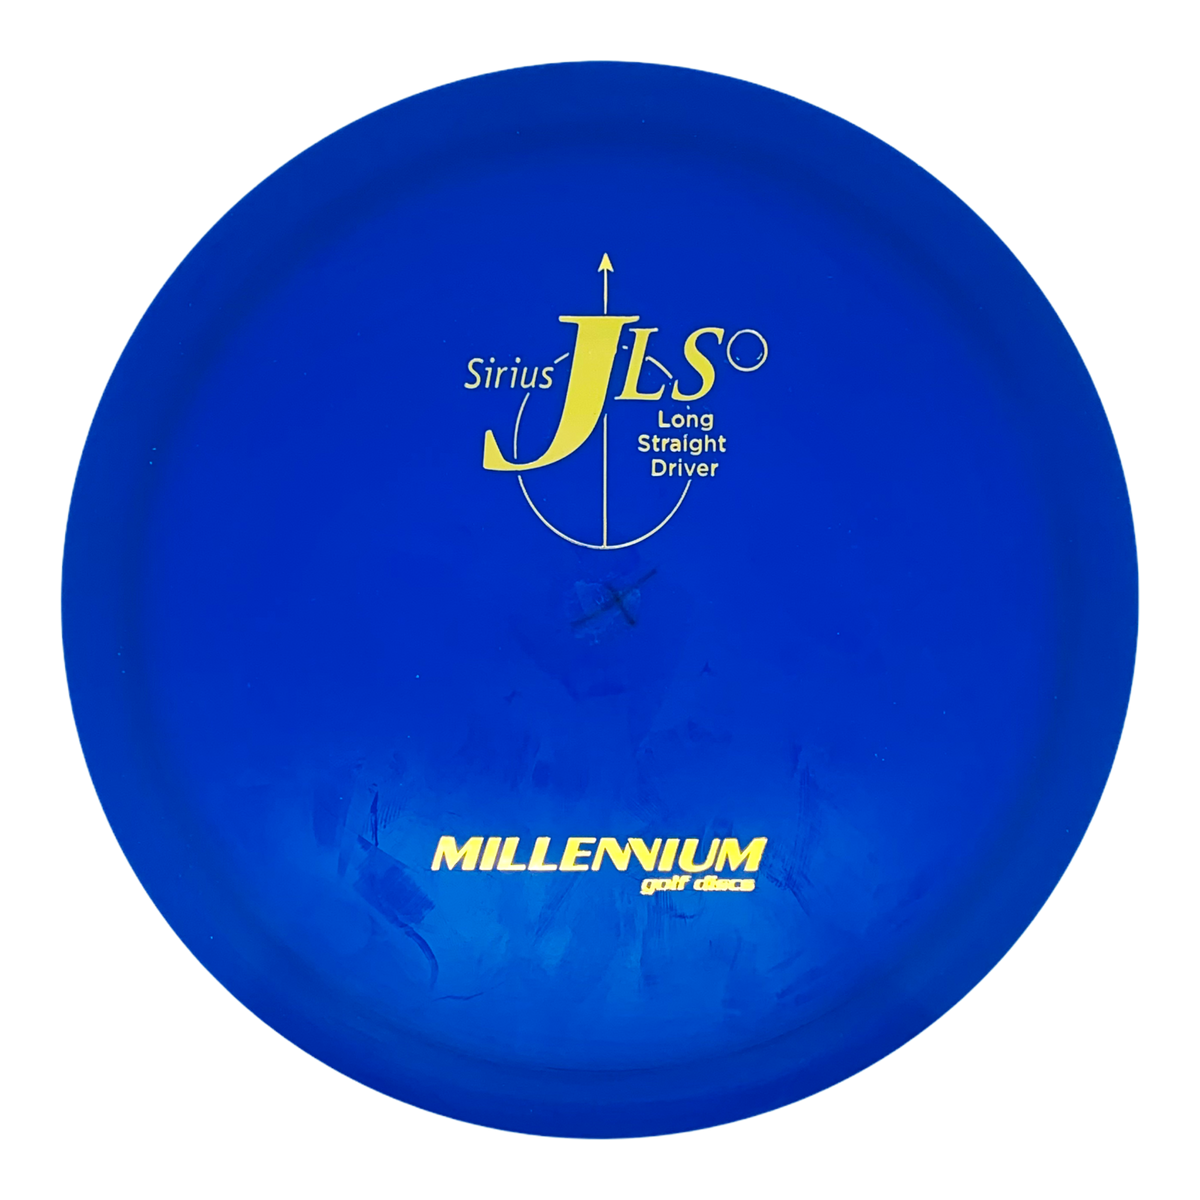 Millennium Sirius JLS - Factory Second